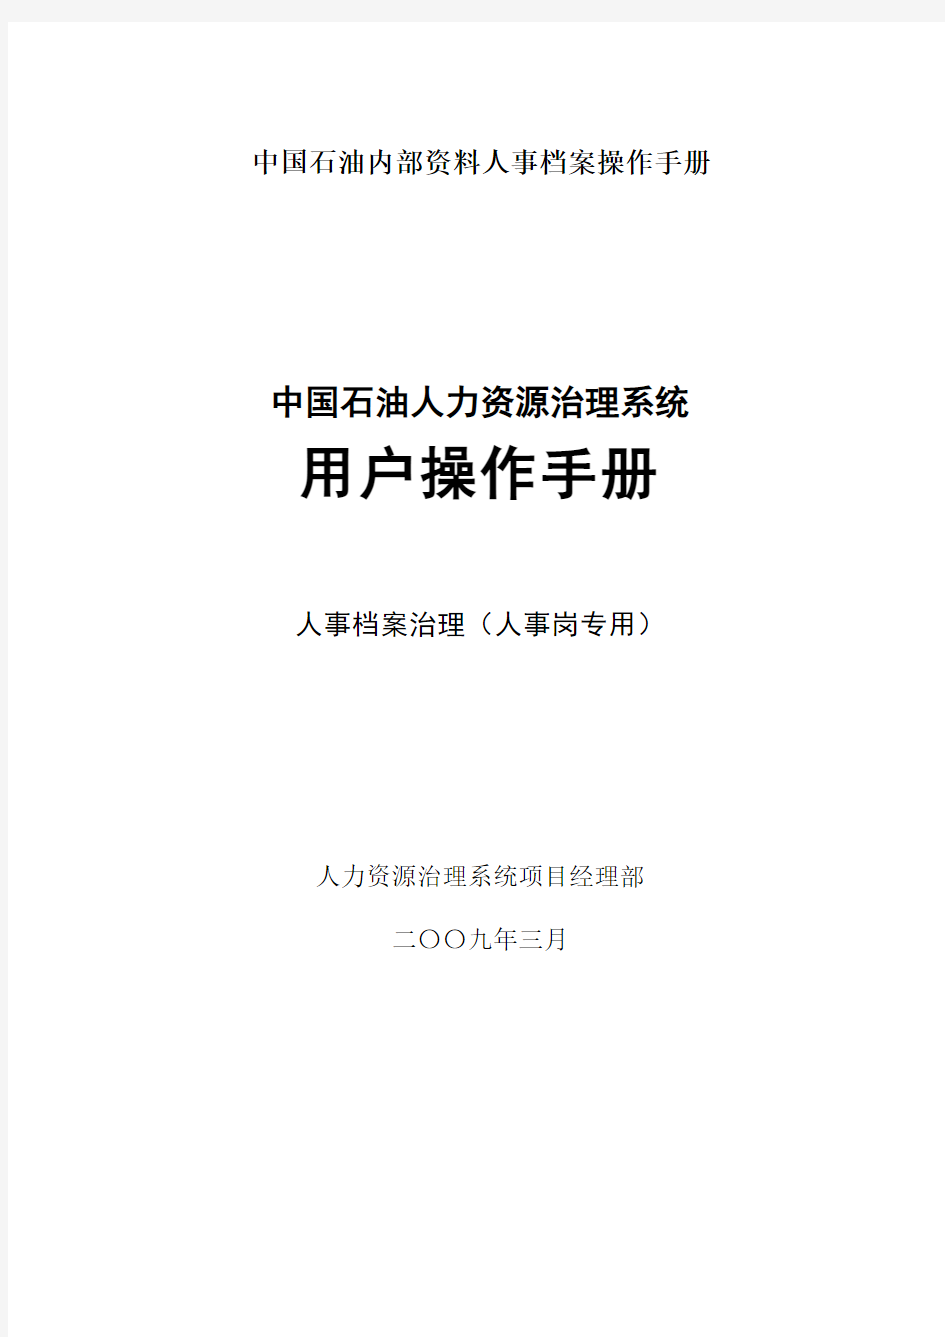 中国石油内部资料人事档案操作手册